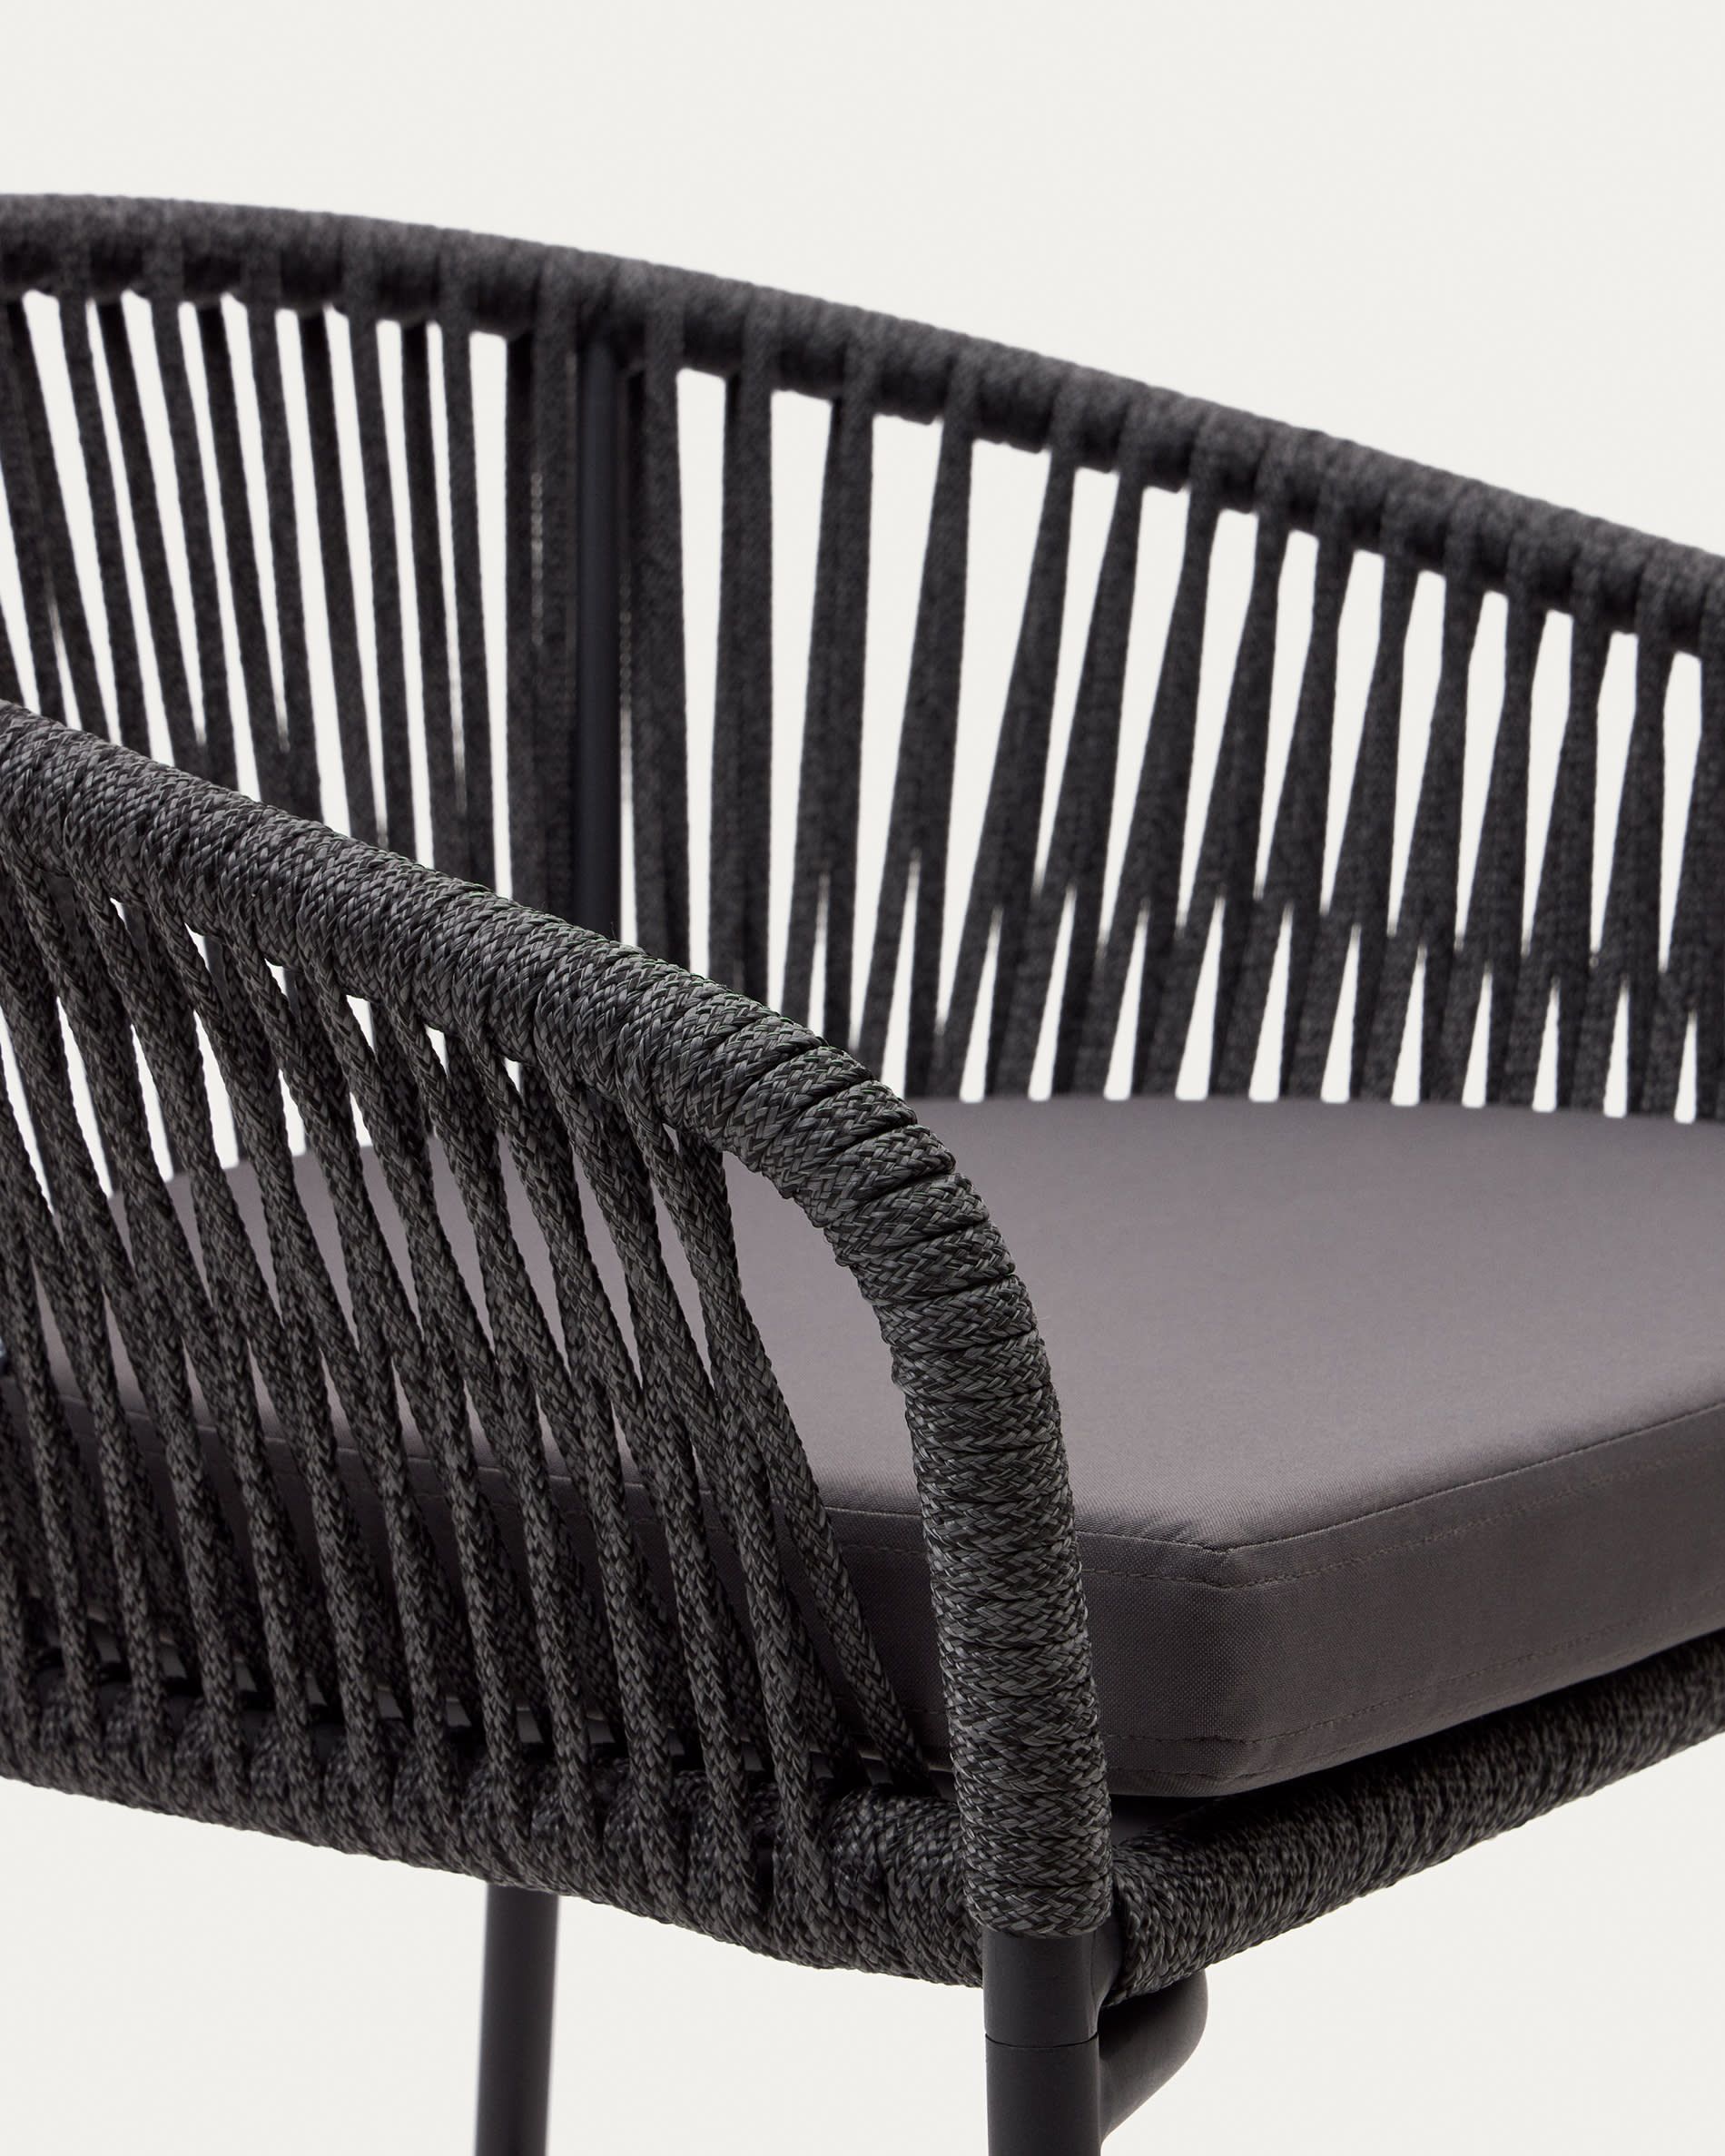 Веревочный барный стул Yanet черного цвета 80 см Yanet